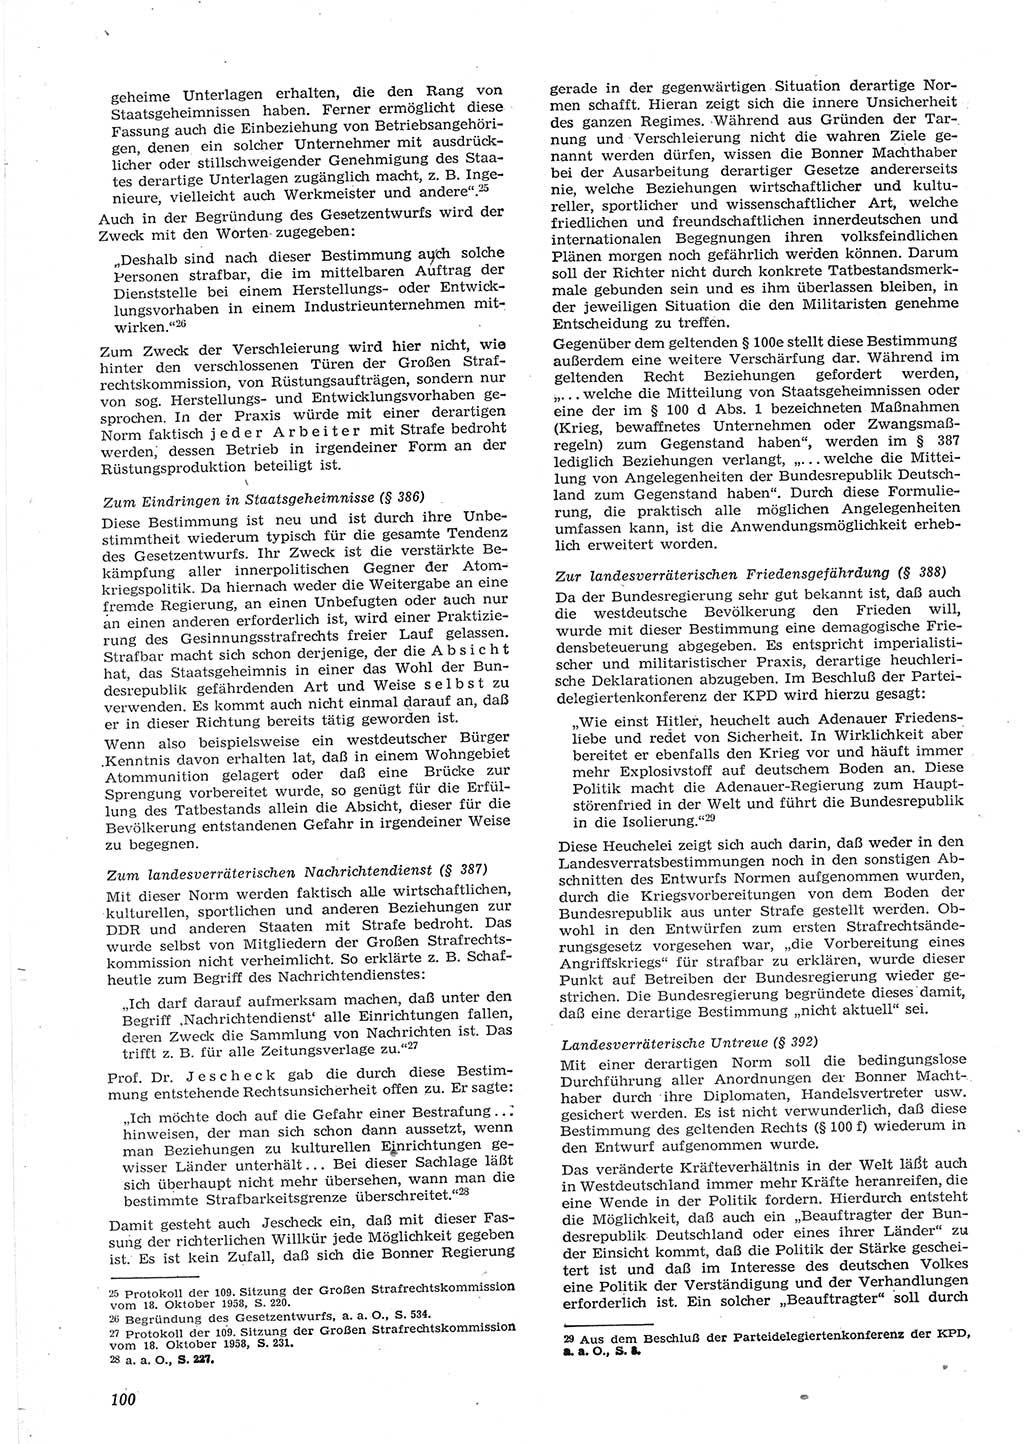 Neue Justiz (NJ), Zeitschrift für Recht und Rechtswissenschaft [Deutsche Demokratische Republik (DDR)], 15. Jahrgang 1961, Seite 100 (NJ DDR 1961, S. 100)